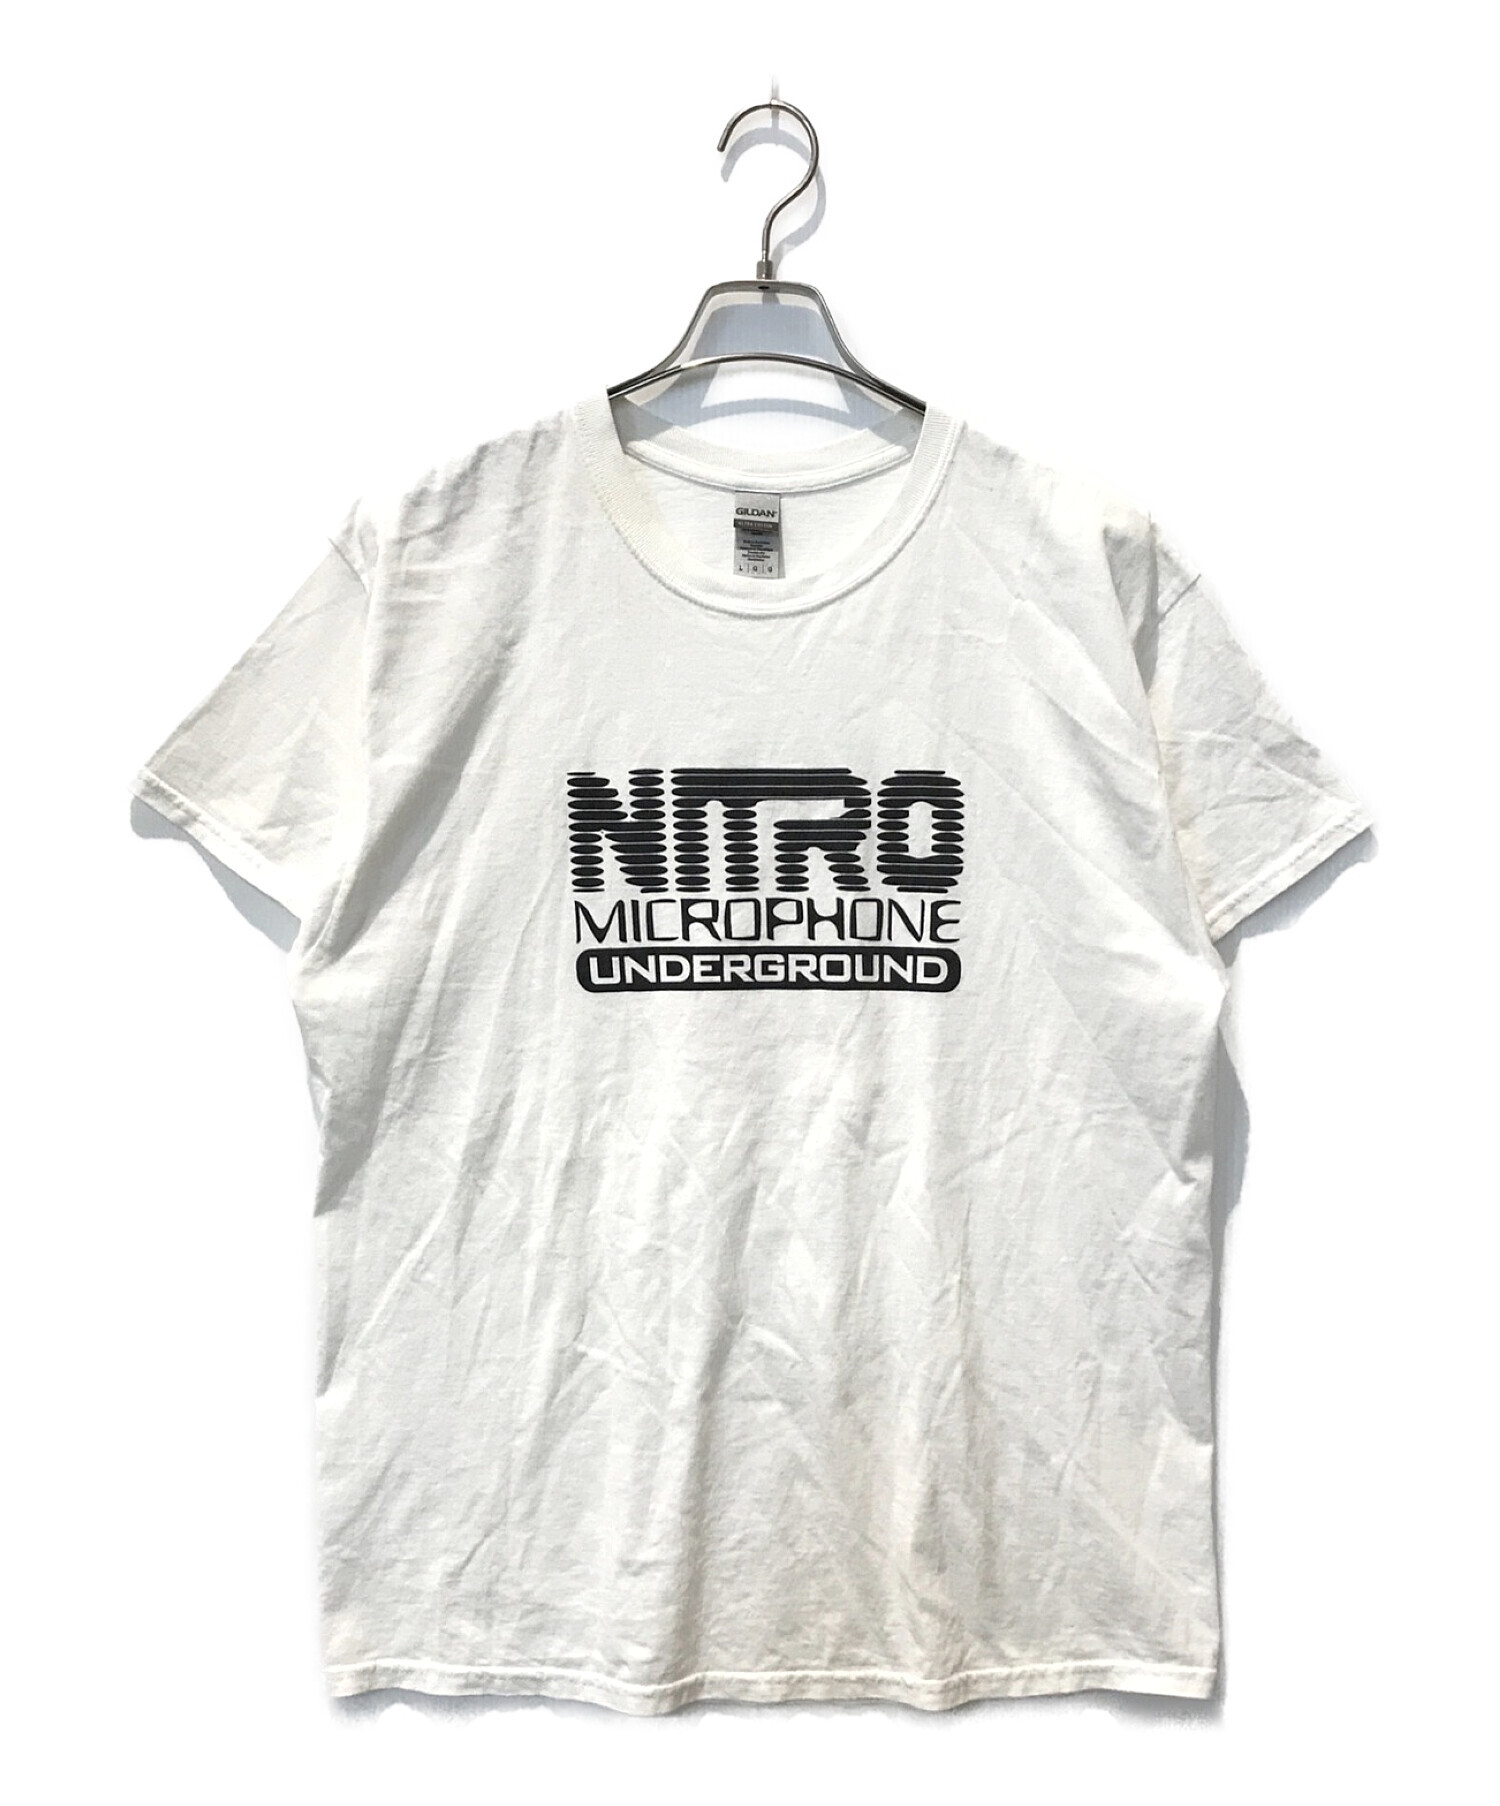 ニトロ・マイクロフォン・アンダーグラウンド 半袖Tシャツ - Tシャツ ...